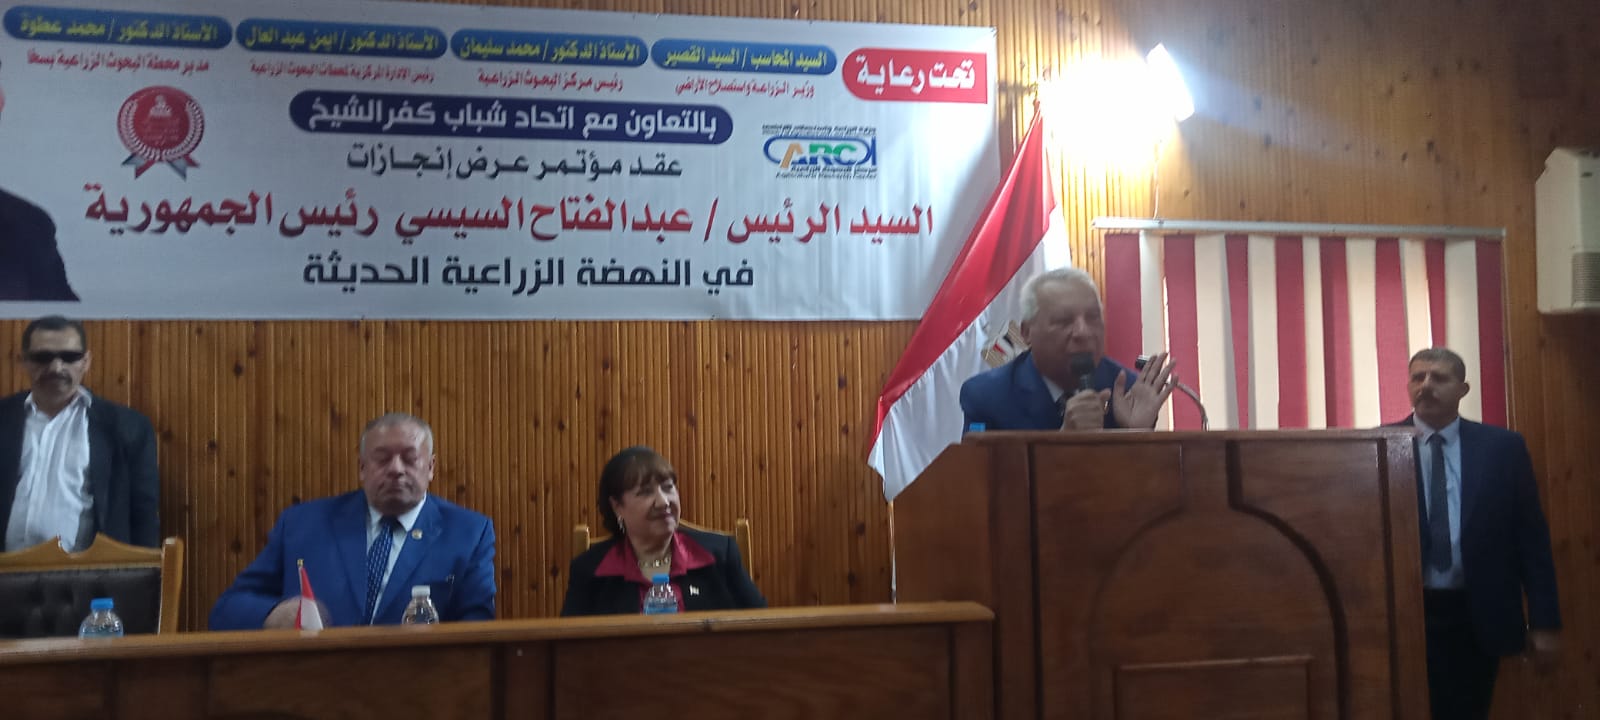 جانب من المؤتمر لعدم المرشح الرئاسي عبدالفتاح السيسي